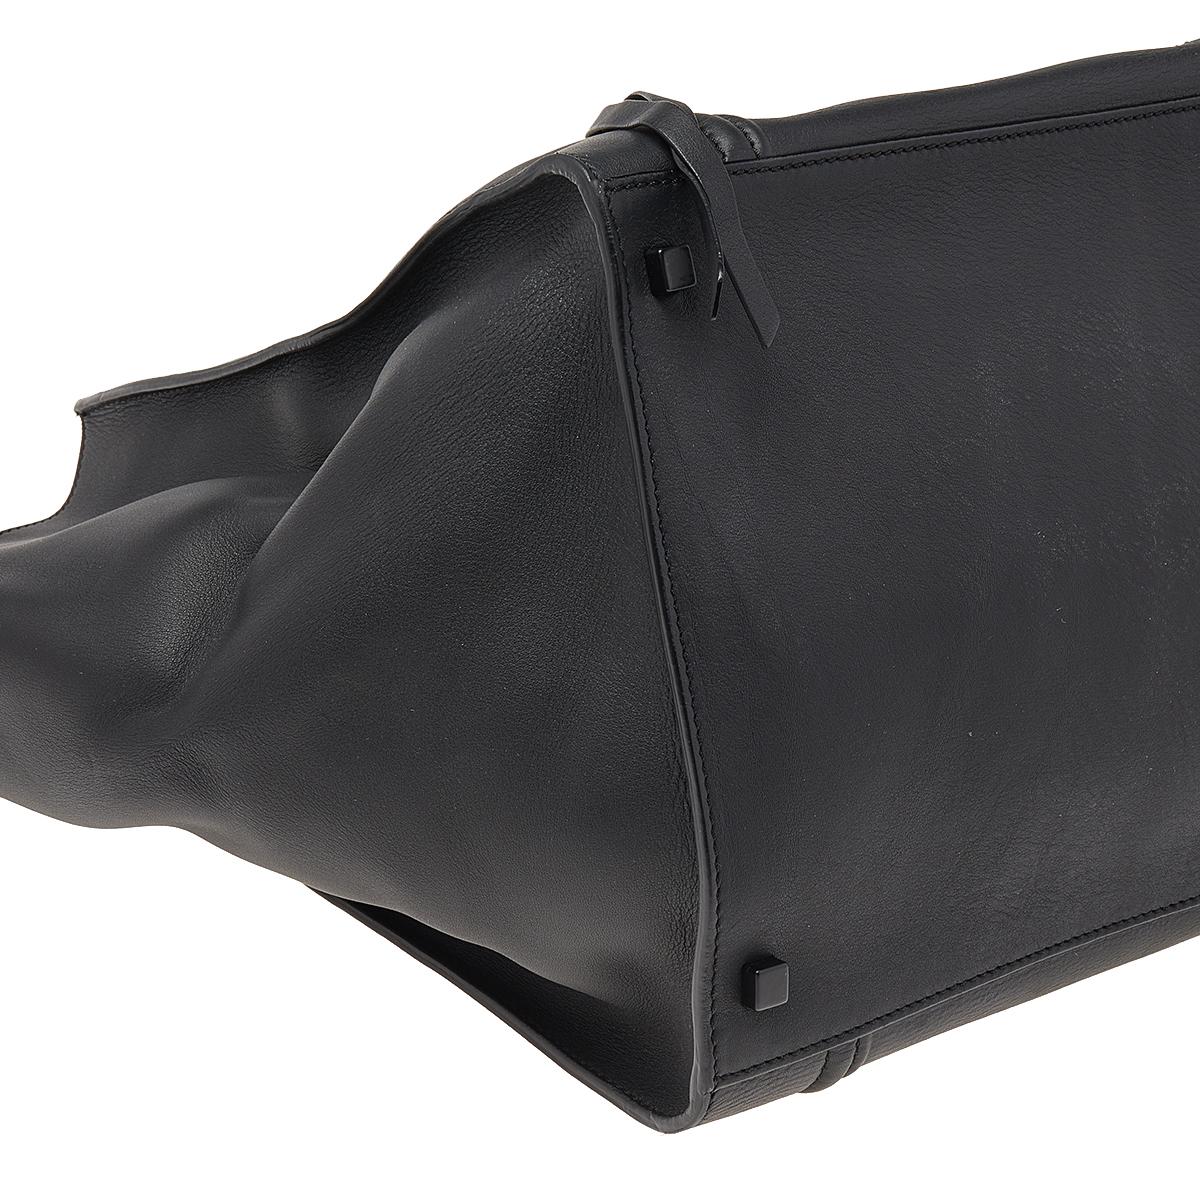 Celine Black Leather Large Phantom Luggage Tote 5